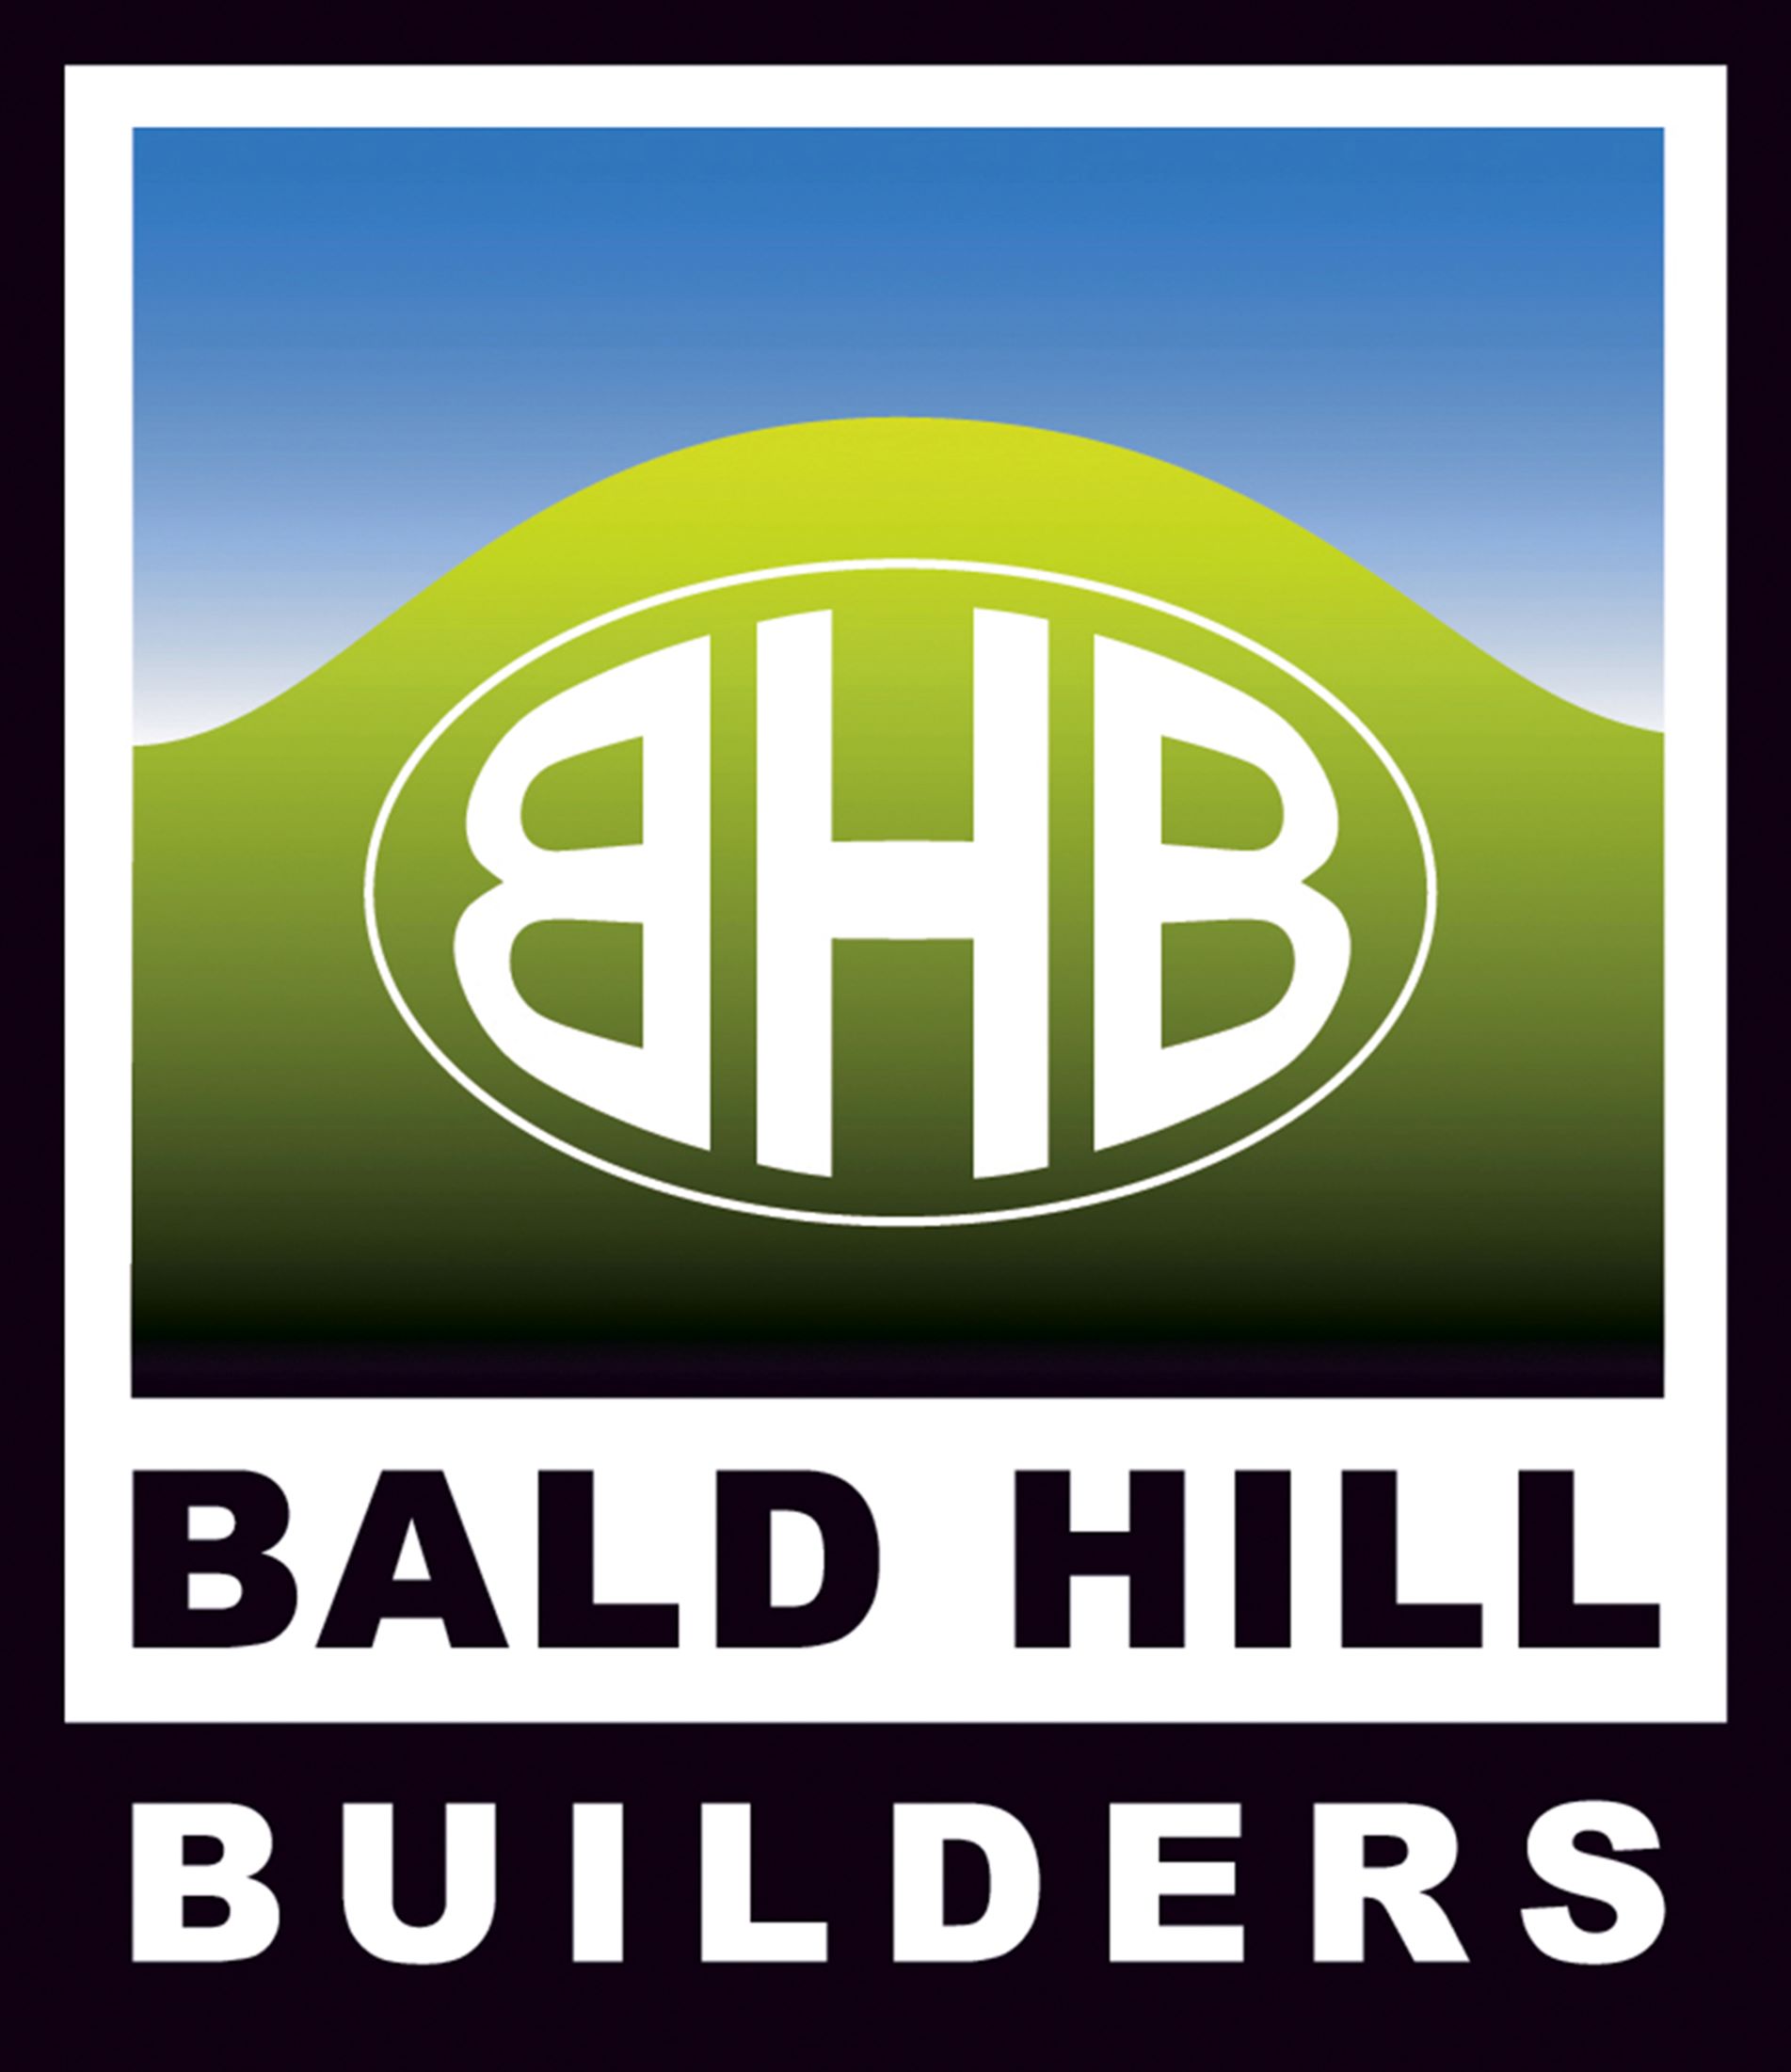 E Bald Hill Builders (Silver)